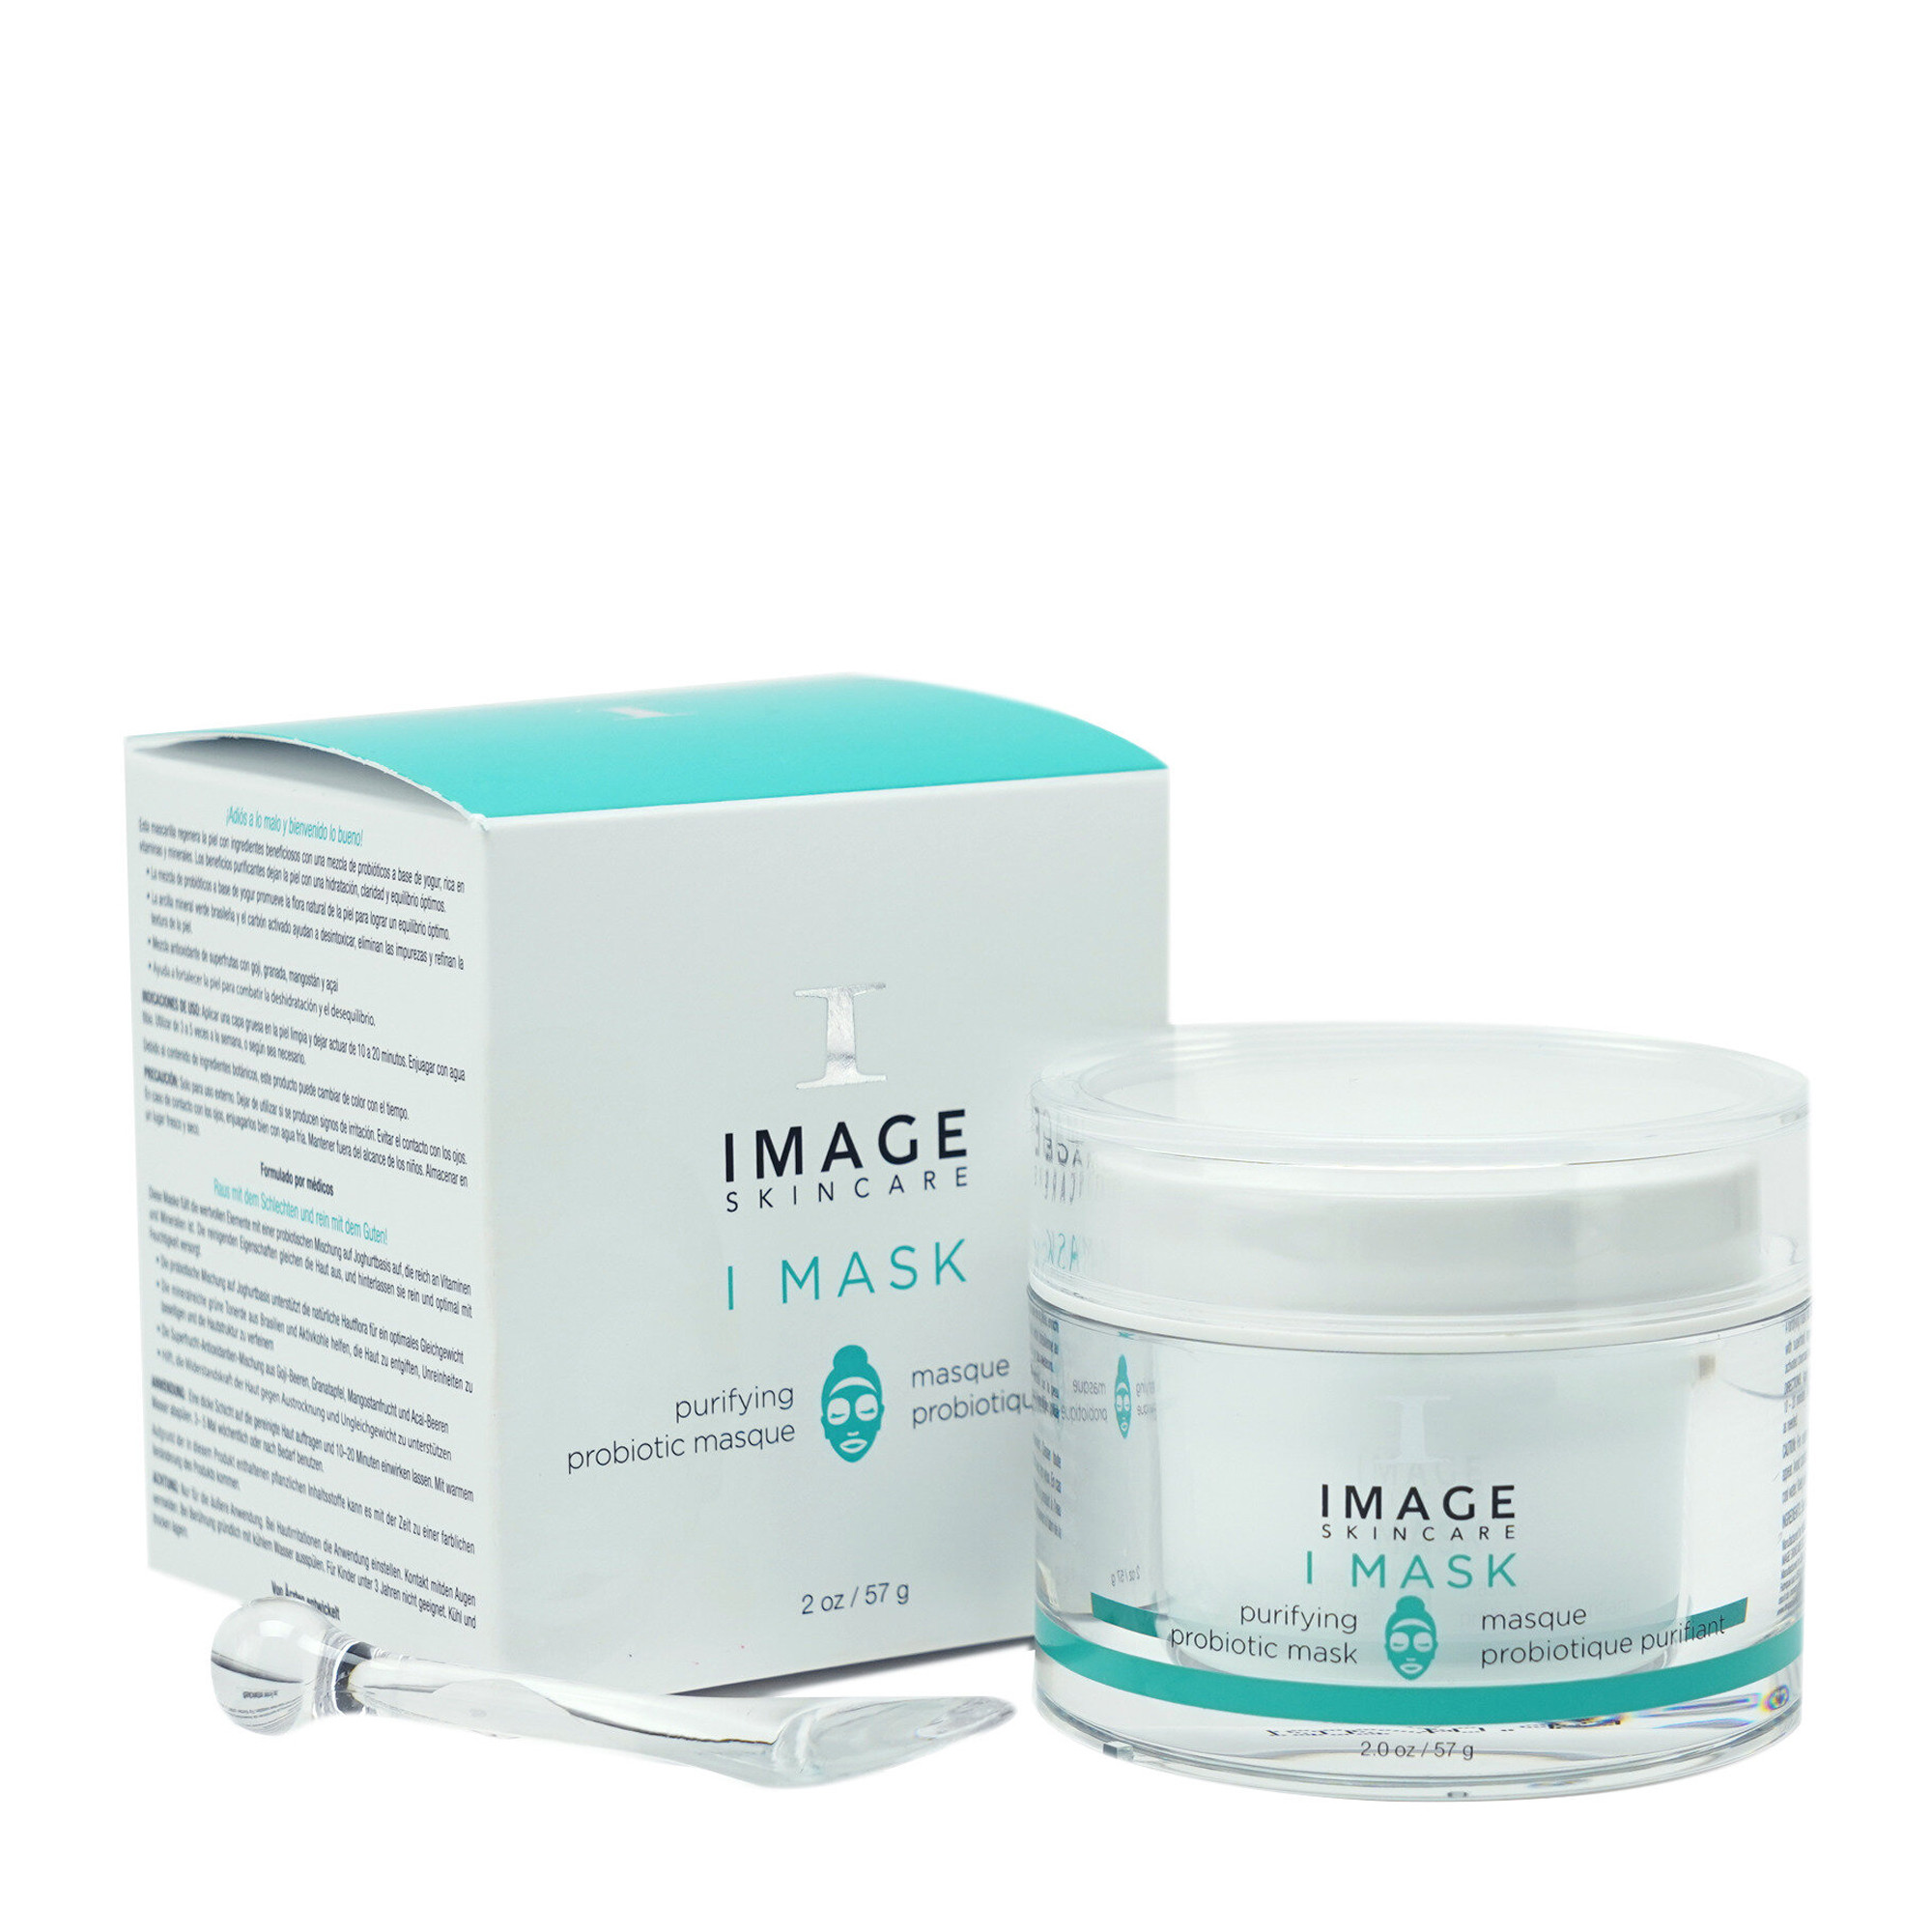 image skincare purifying probiotic mask цена